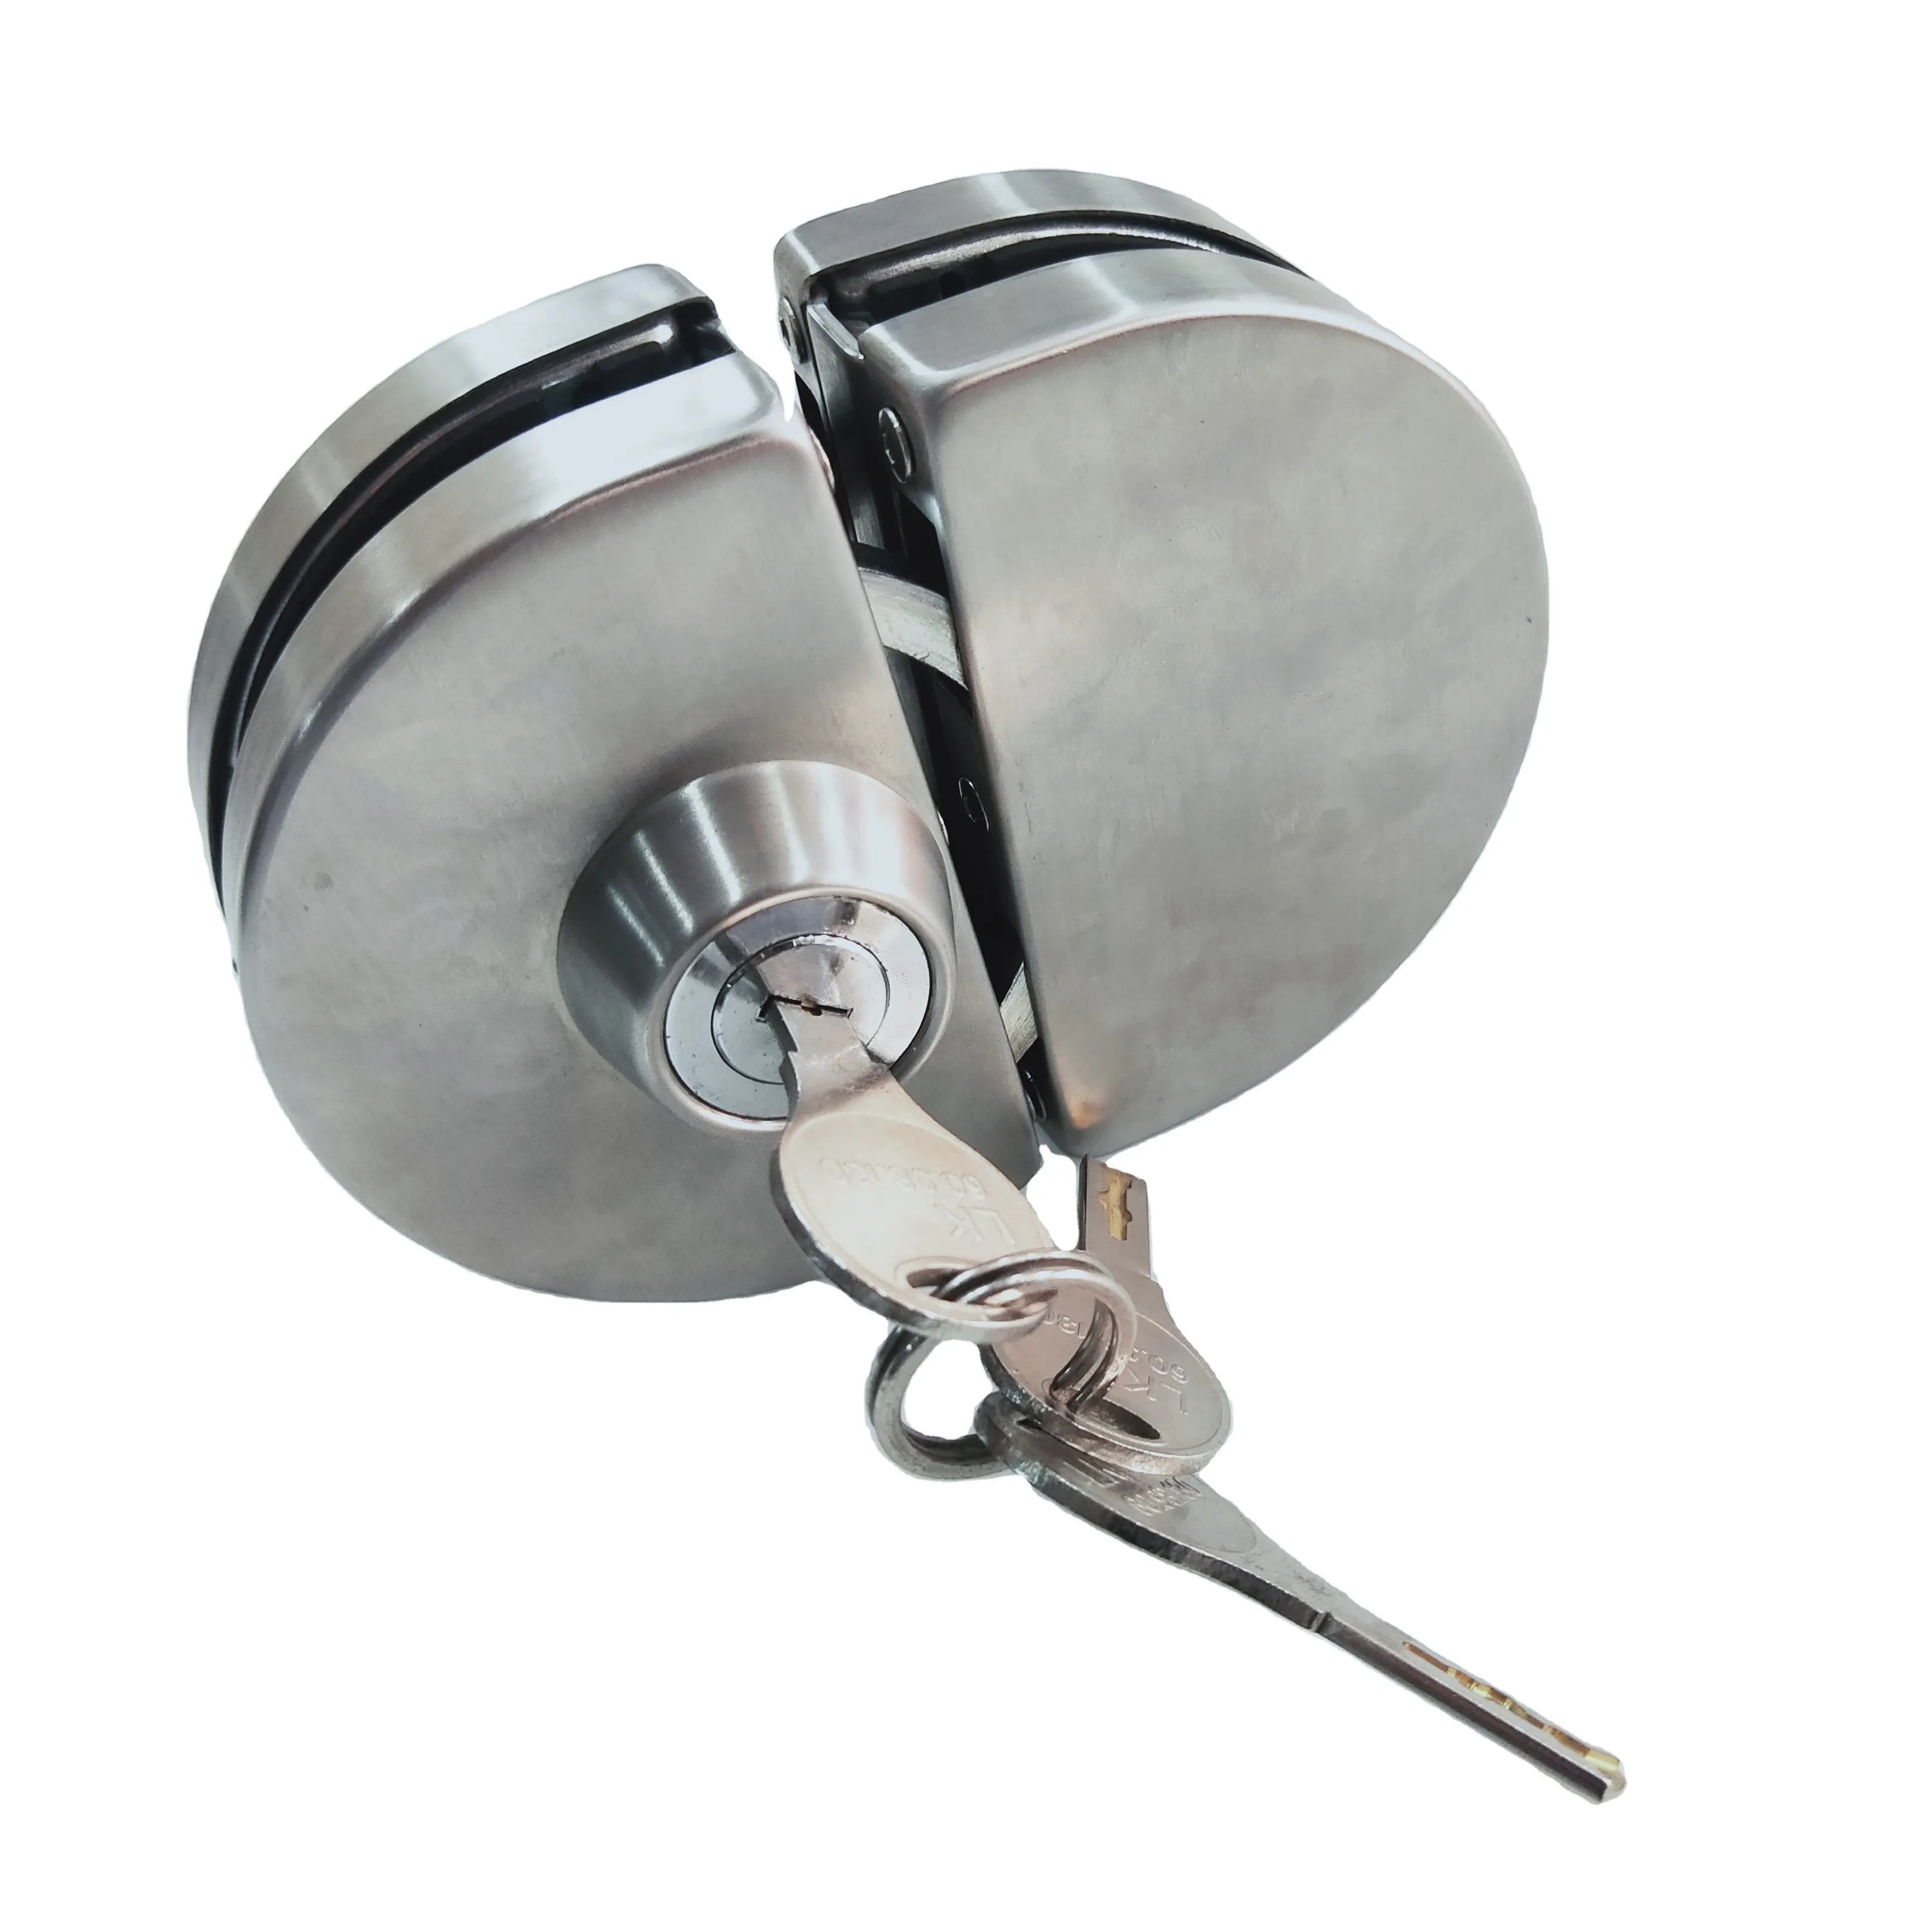 Kunci tengah pintu keselamatan baja tahan karat kunci pintu kaca geser ganda keamanan dengan kunci